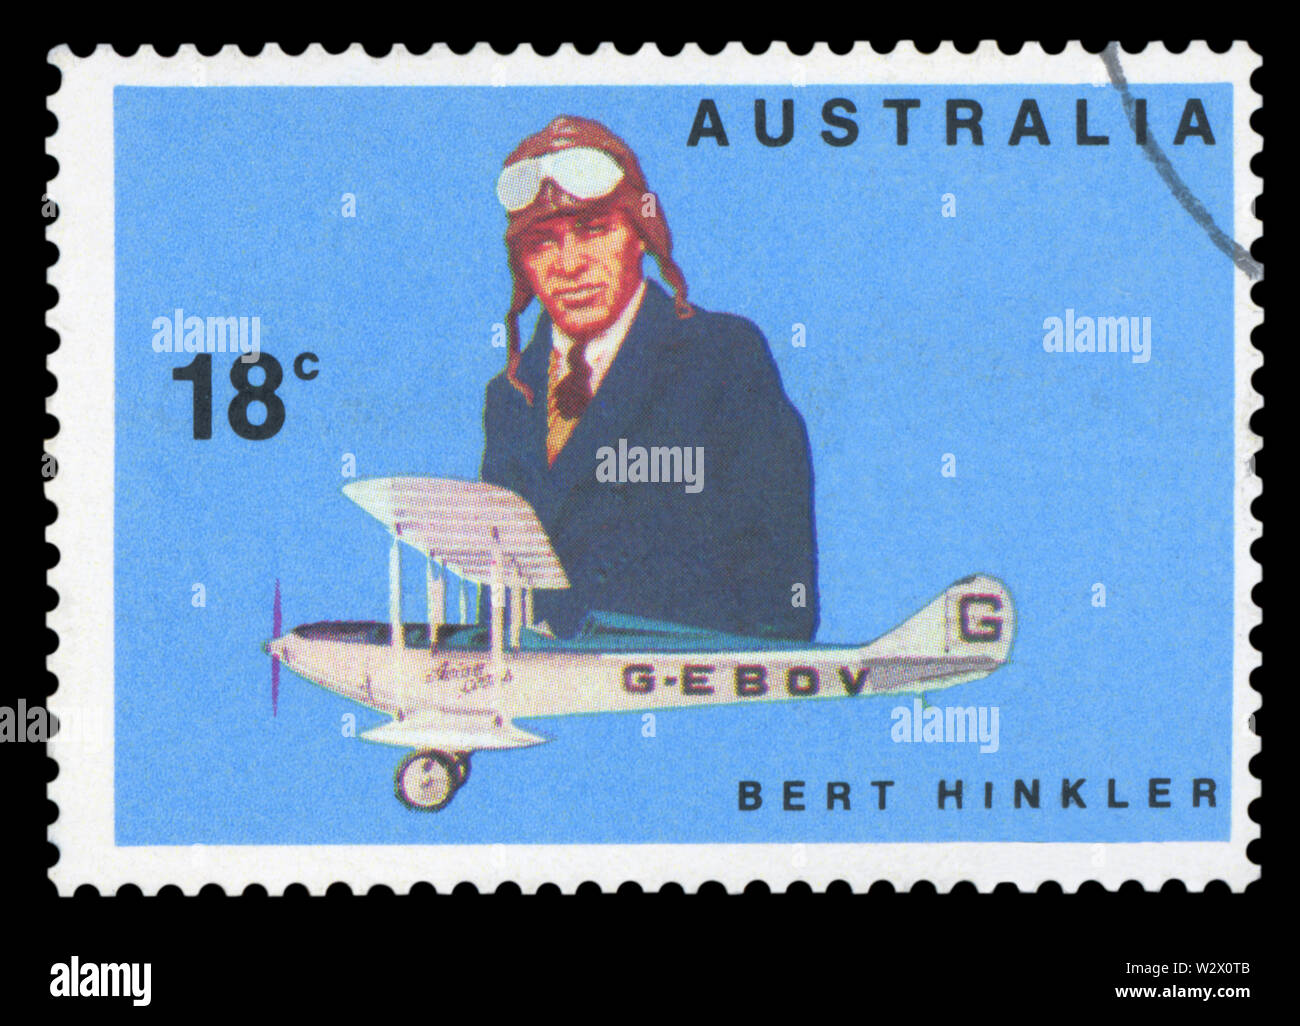 Australien - ca. 1978: eine stornierte Briefmarke aus Australien, die berühmten australischen Piloten, 1978 ausgestellt. Stockfoto